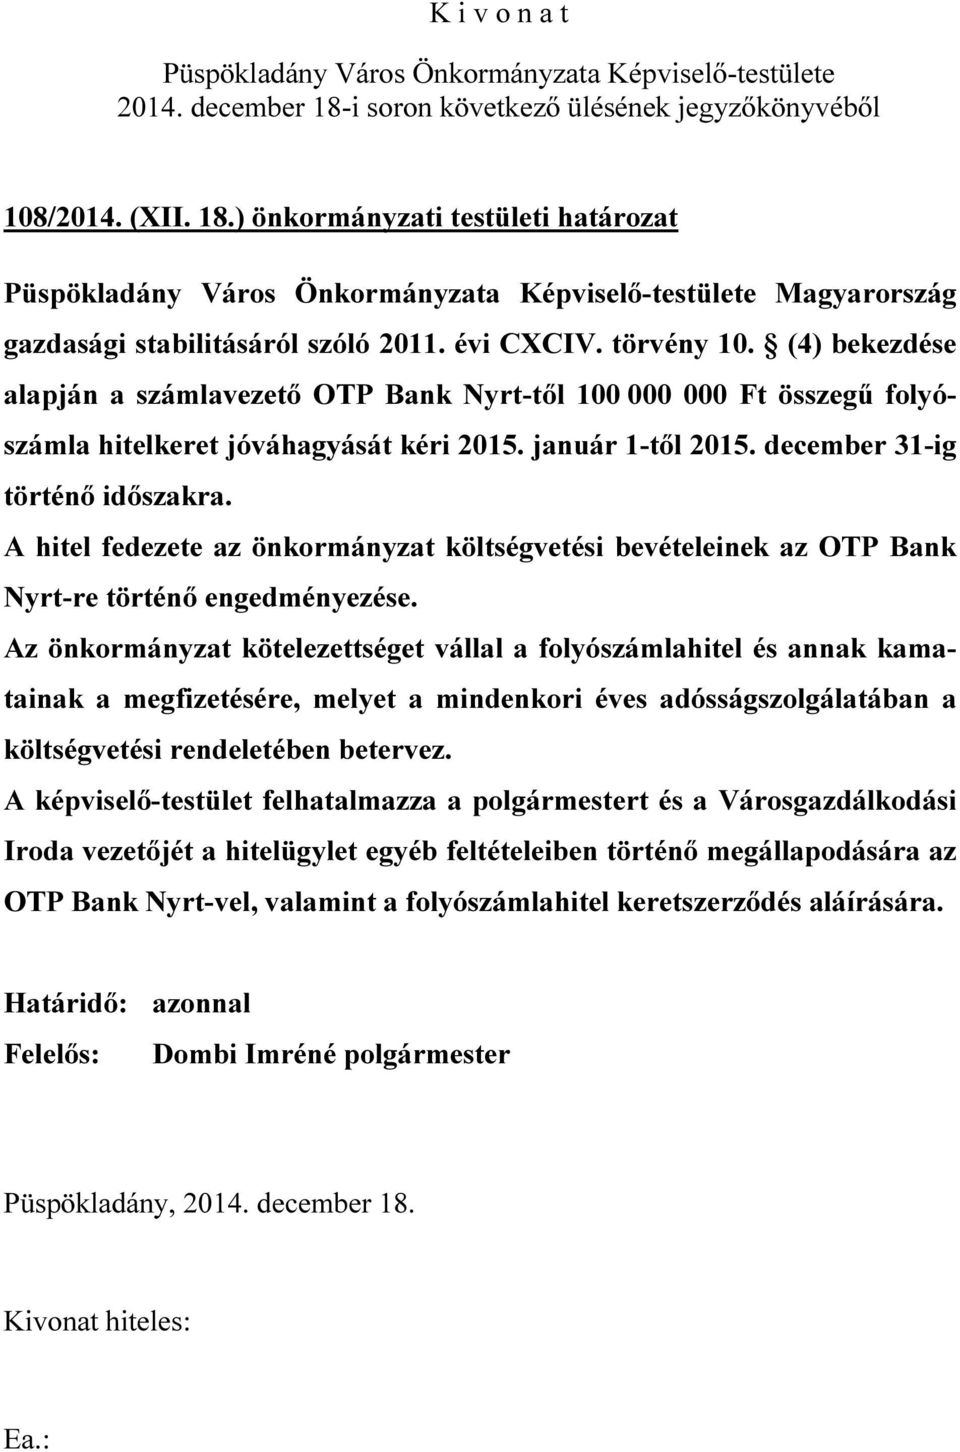 A hitel fedezete az önkormányzat költségvetési bevételeinek az OTP Bank Nyrt-re történő engedményezése.